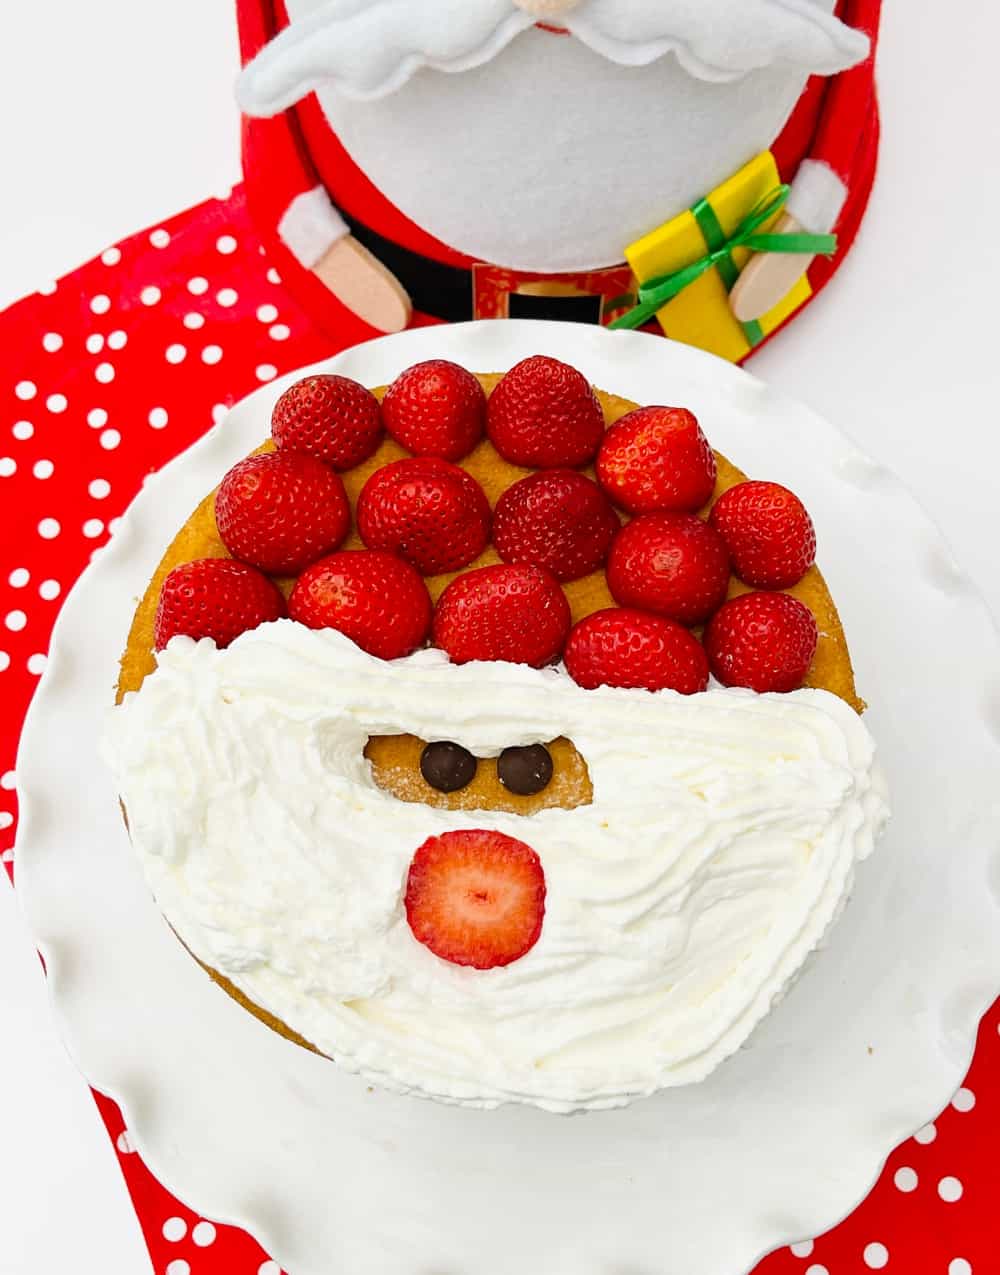 Best Christmas Cake Ideas for Celebrating the Season - Sendbestgift.com